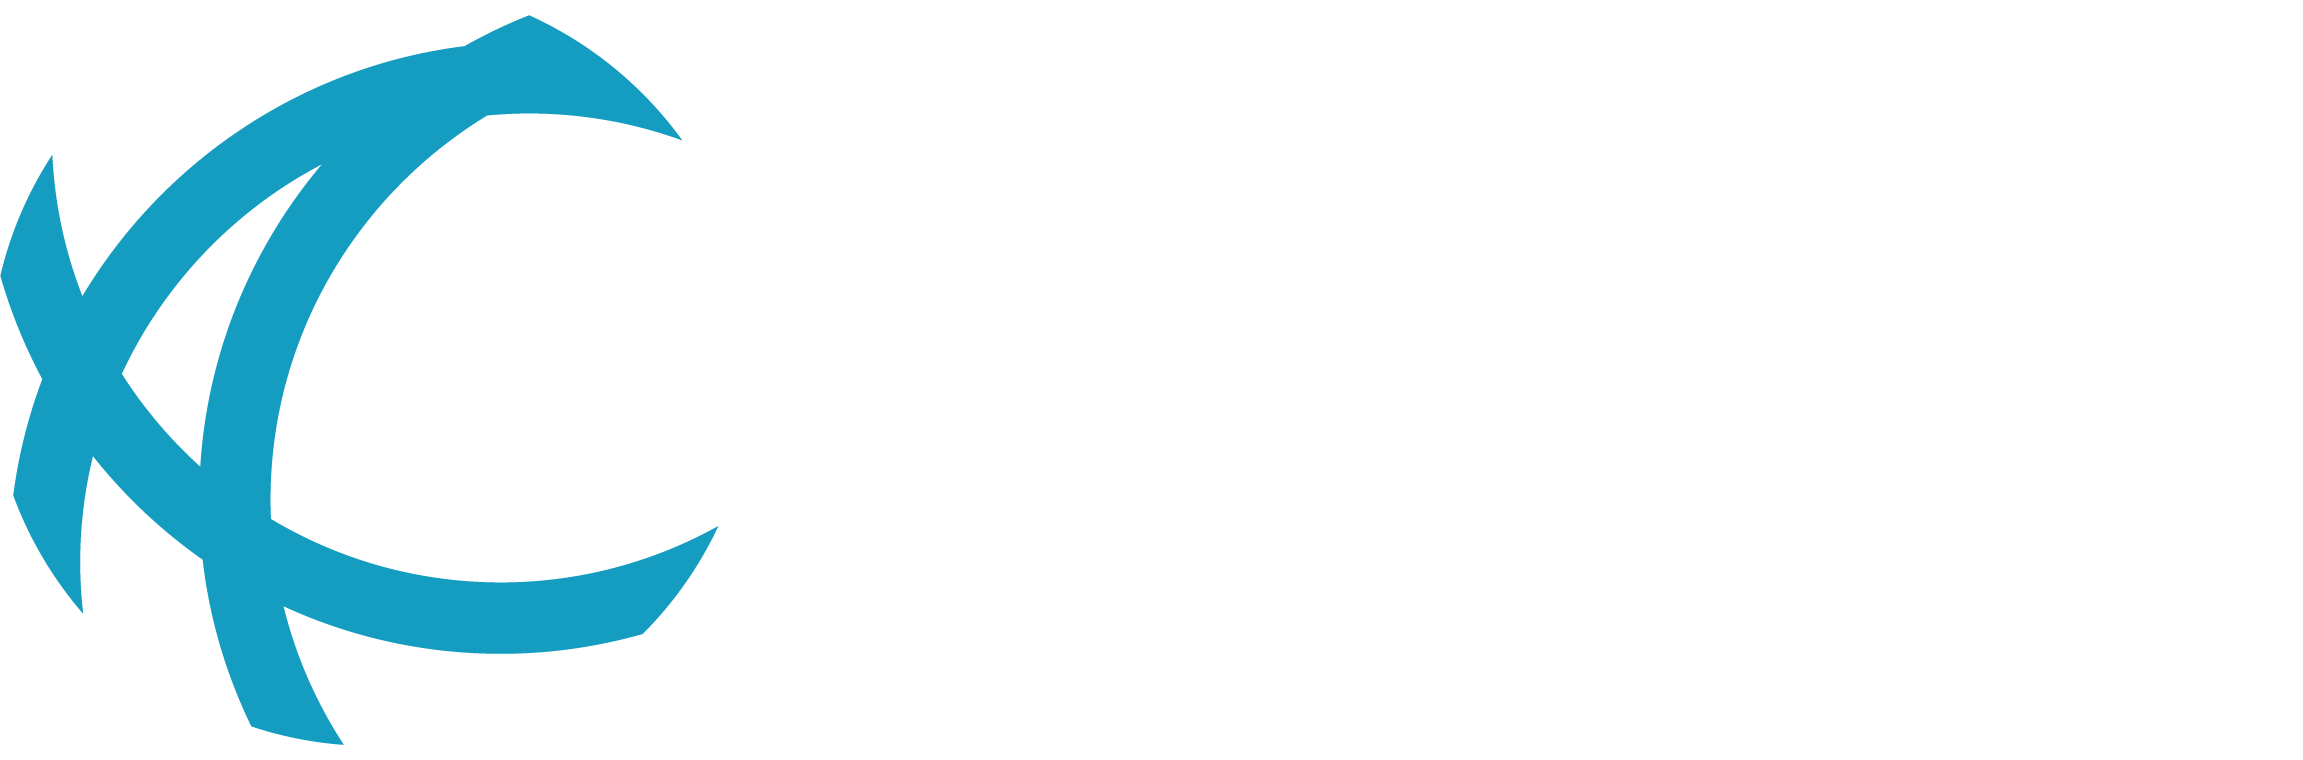 Saudi Ajal